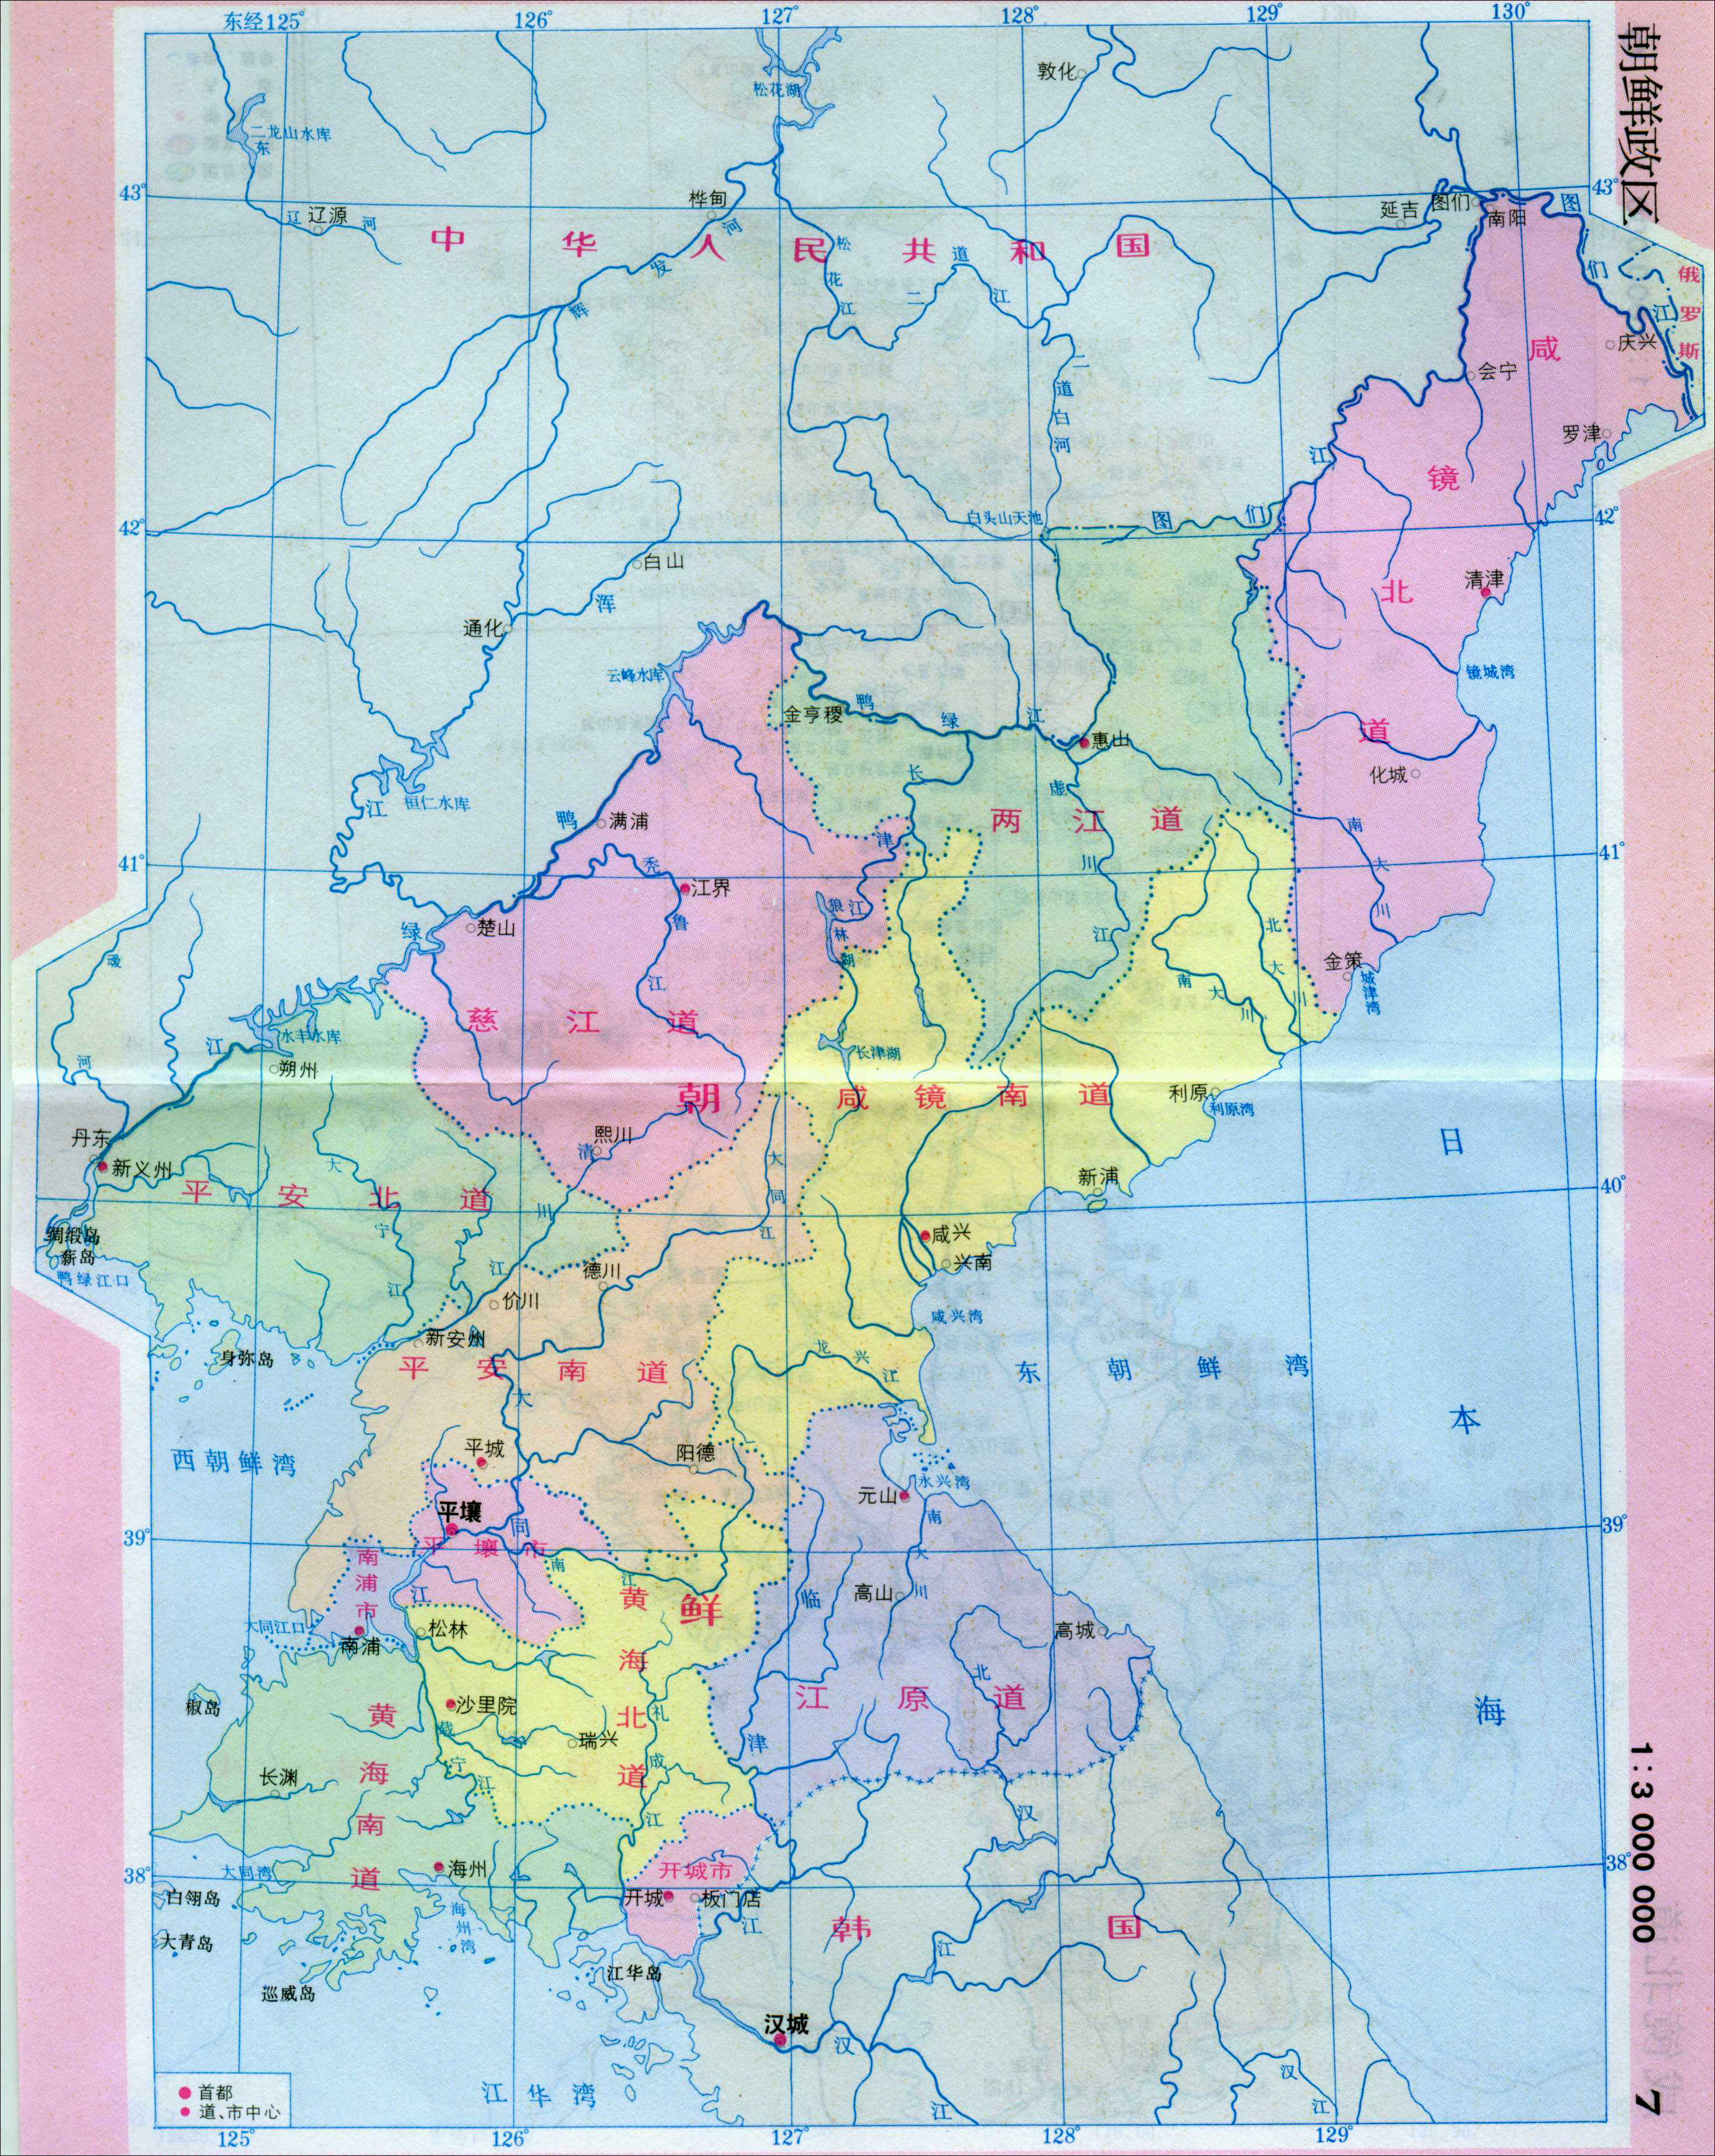 朝鲜陆上邻国(逆时针方向)注:本文章引用多篇资料整合而成,仅为个人